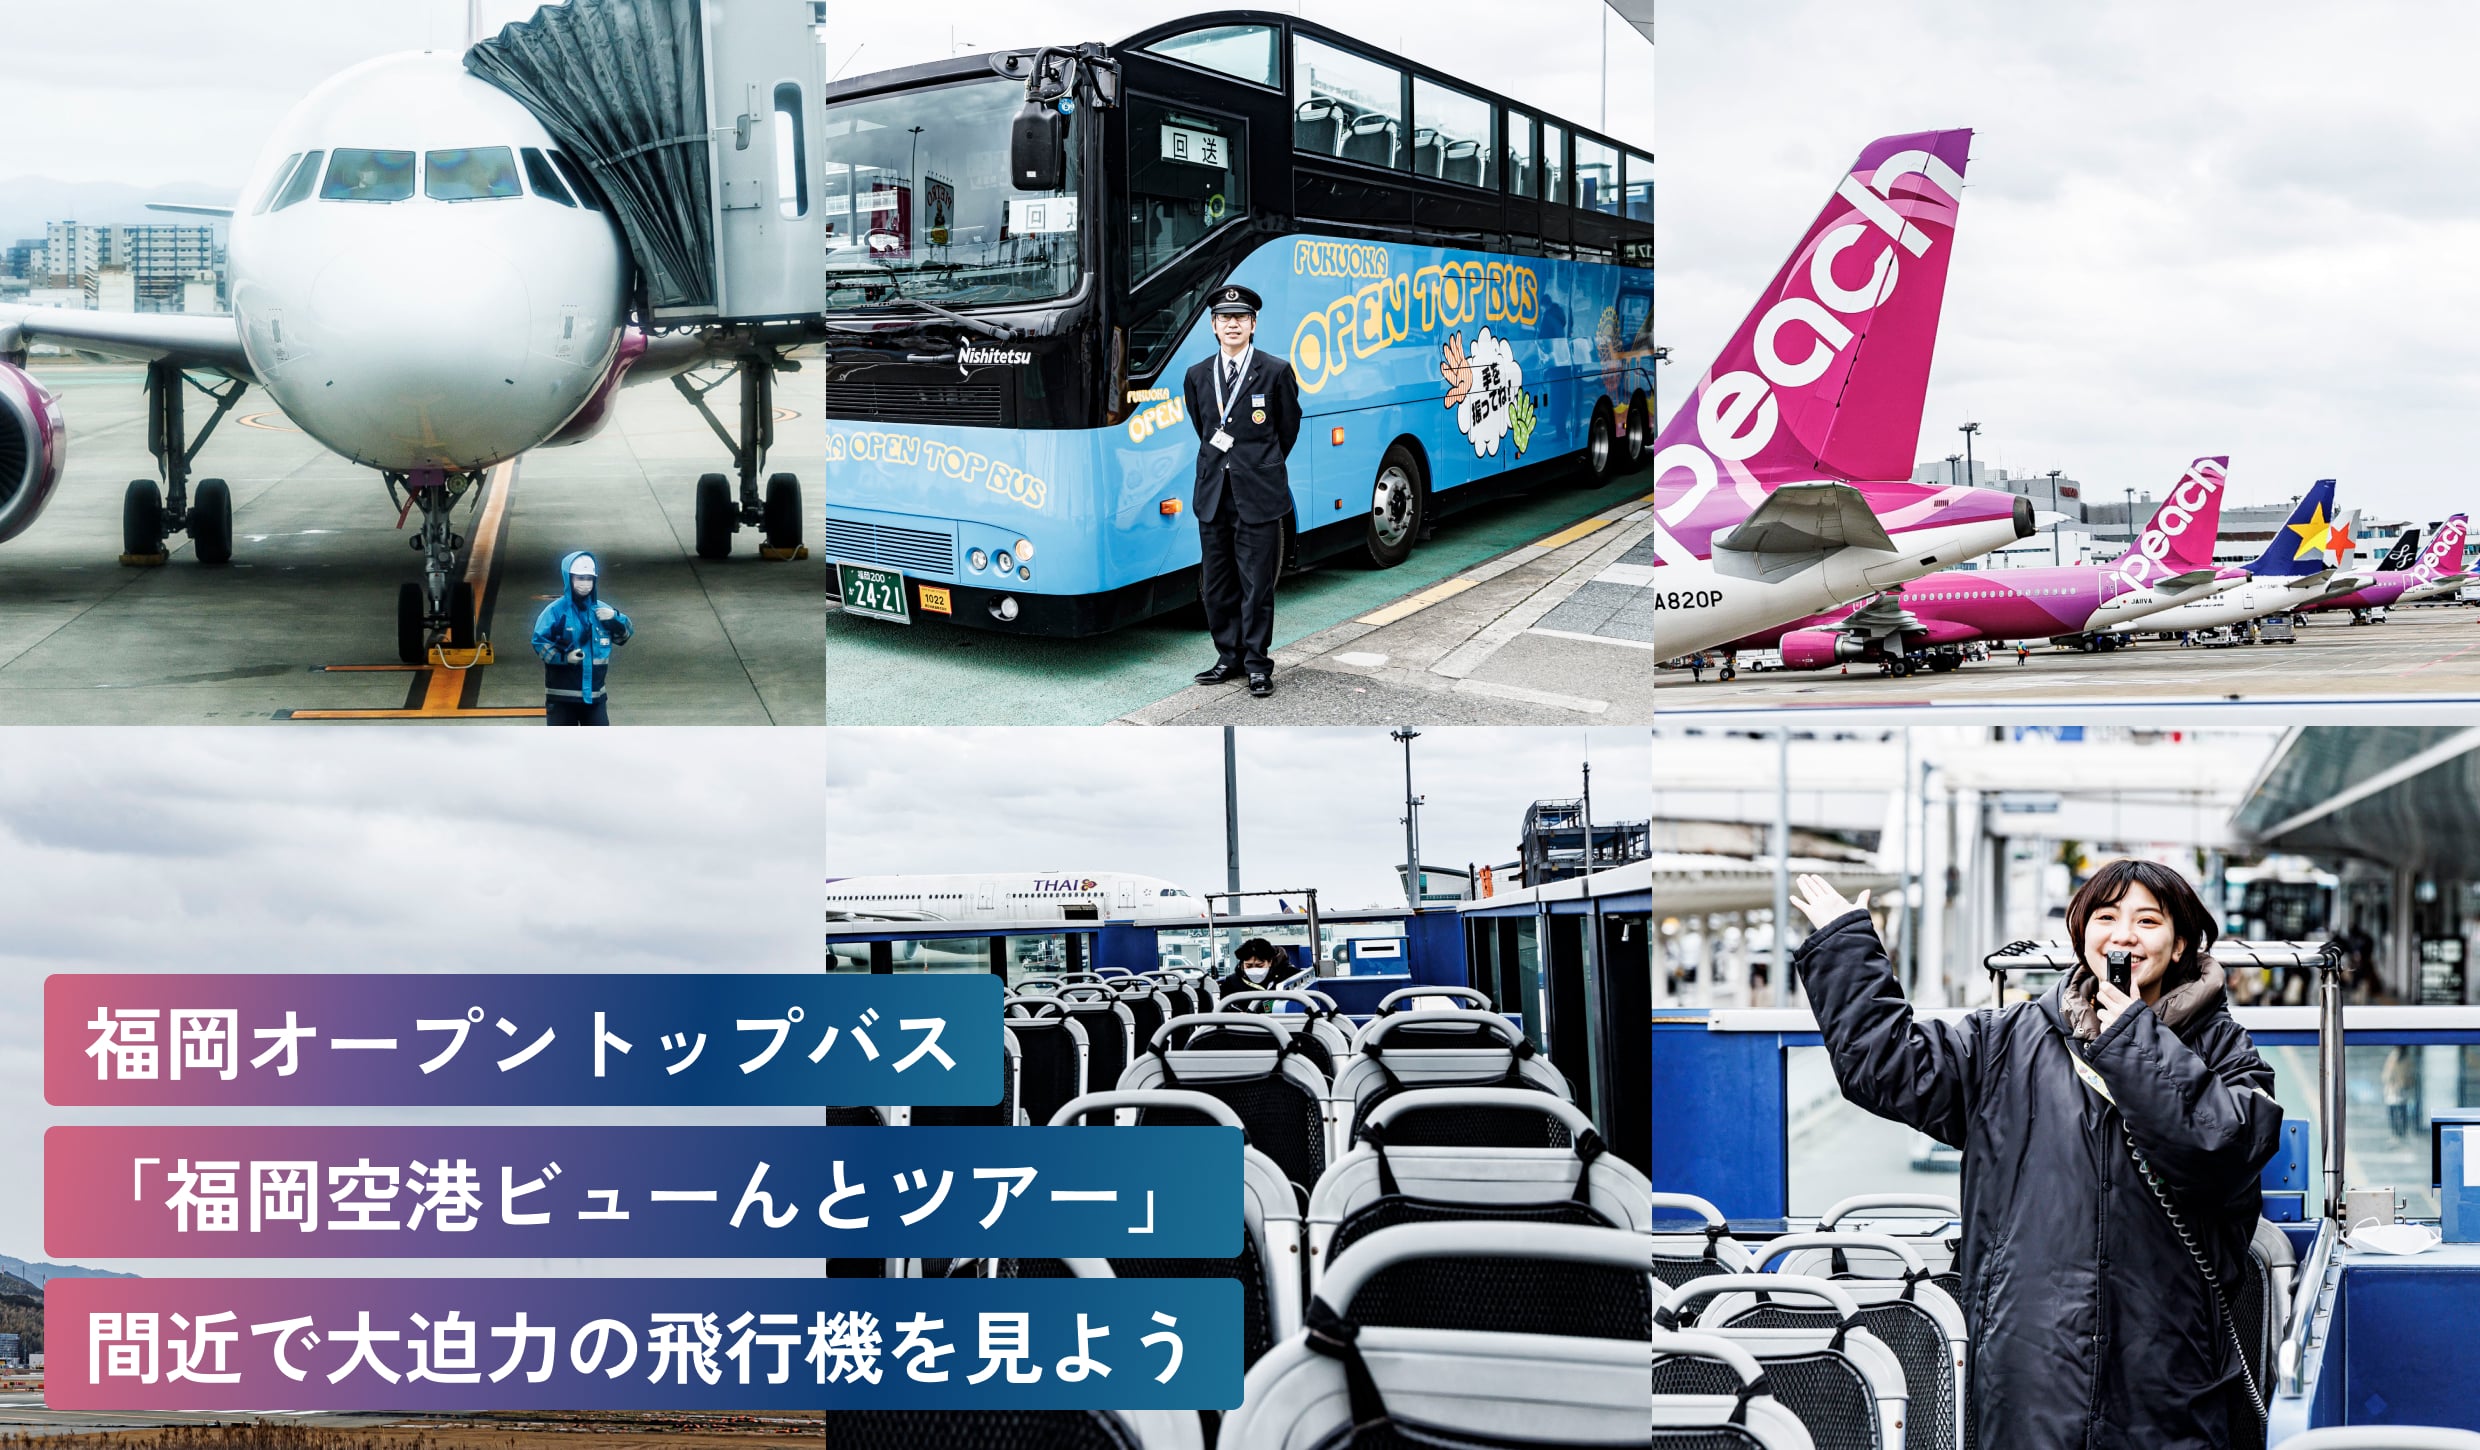 福岡オープントップバス「福岡空港ビューんとツアー」間近で大迫力の飛行機を見よう